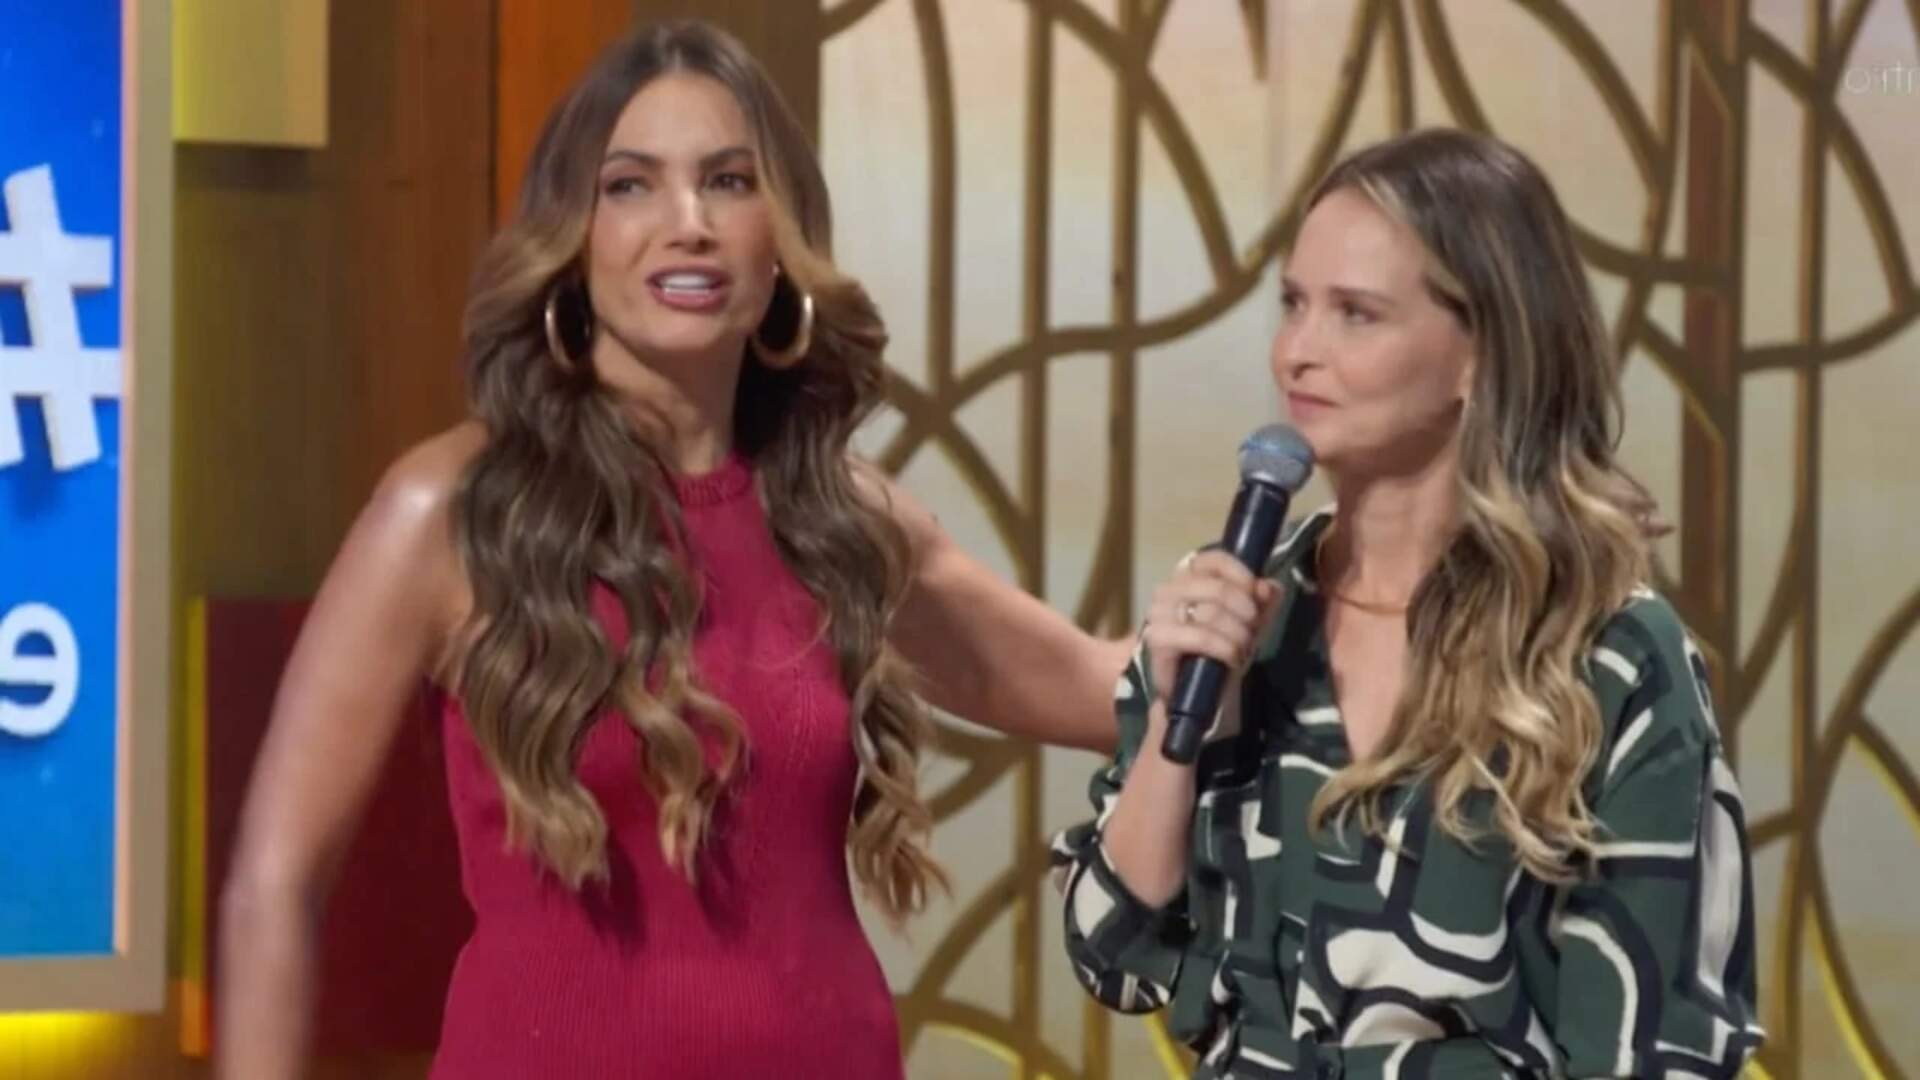 No ‘Encontro’, Patrícia Poeta não estuda história da convidada, erra informações e é corrigida ao vivo - Metropolitana FM